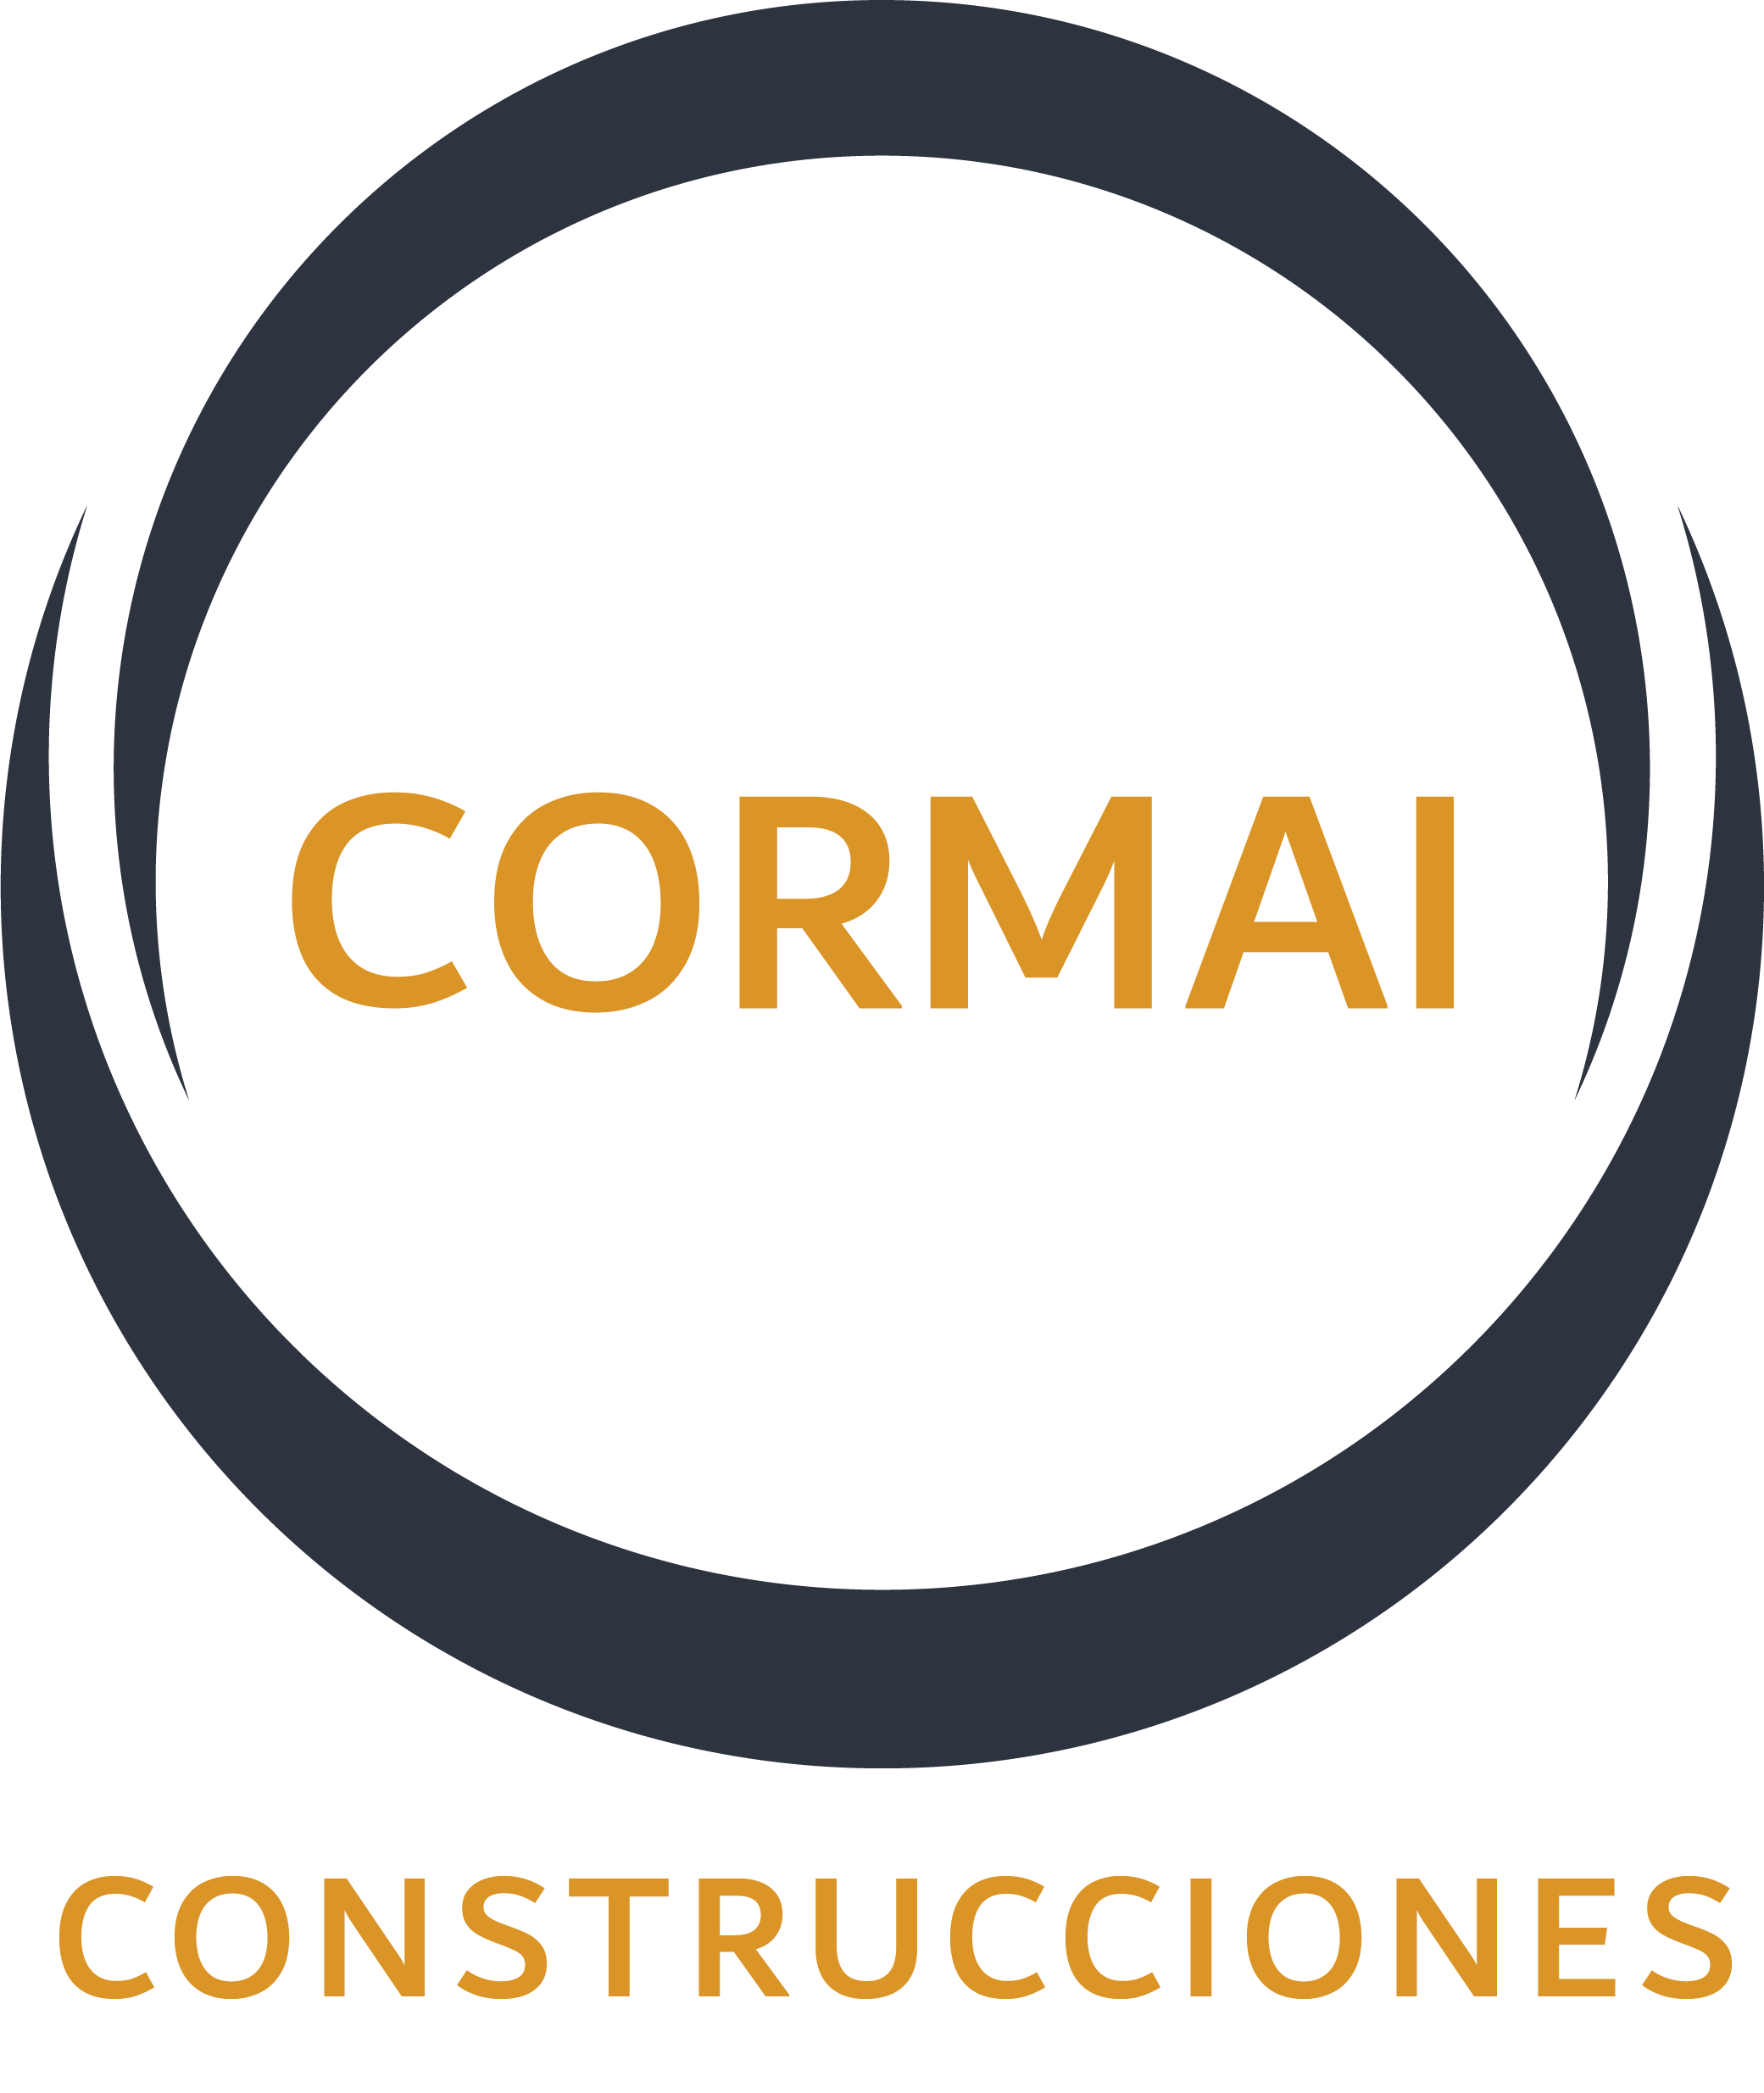 LOGO CORMAI CONSTRUCCIONES